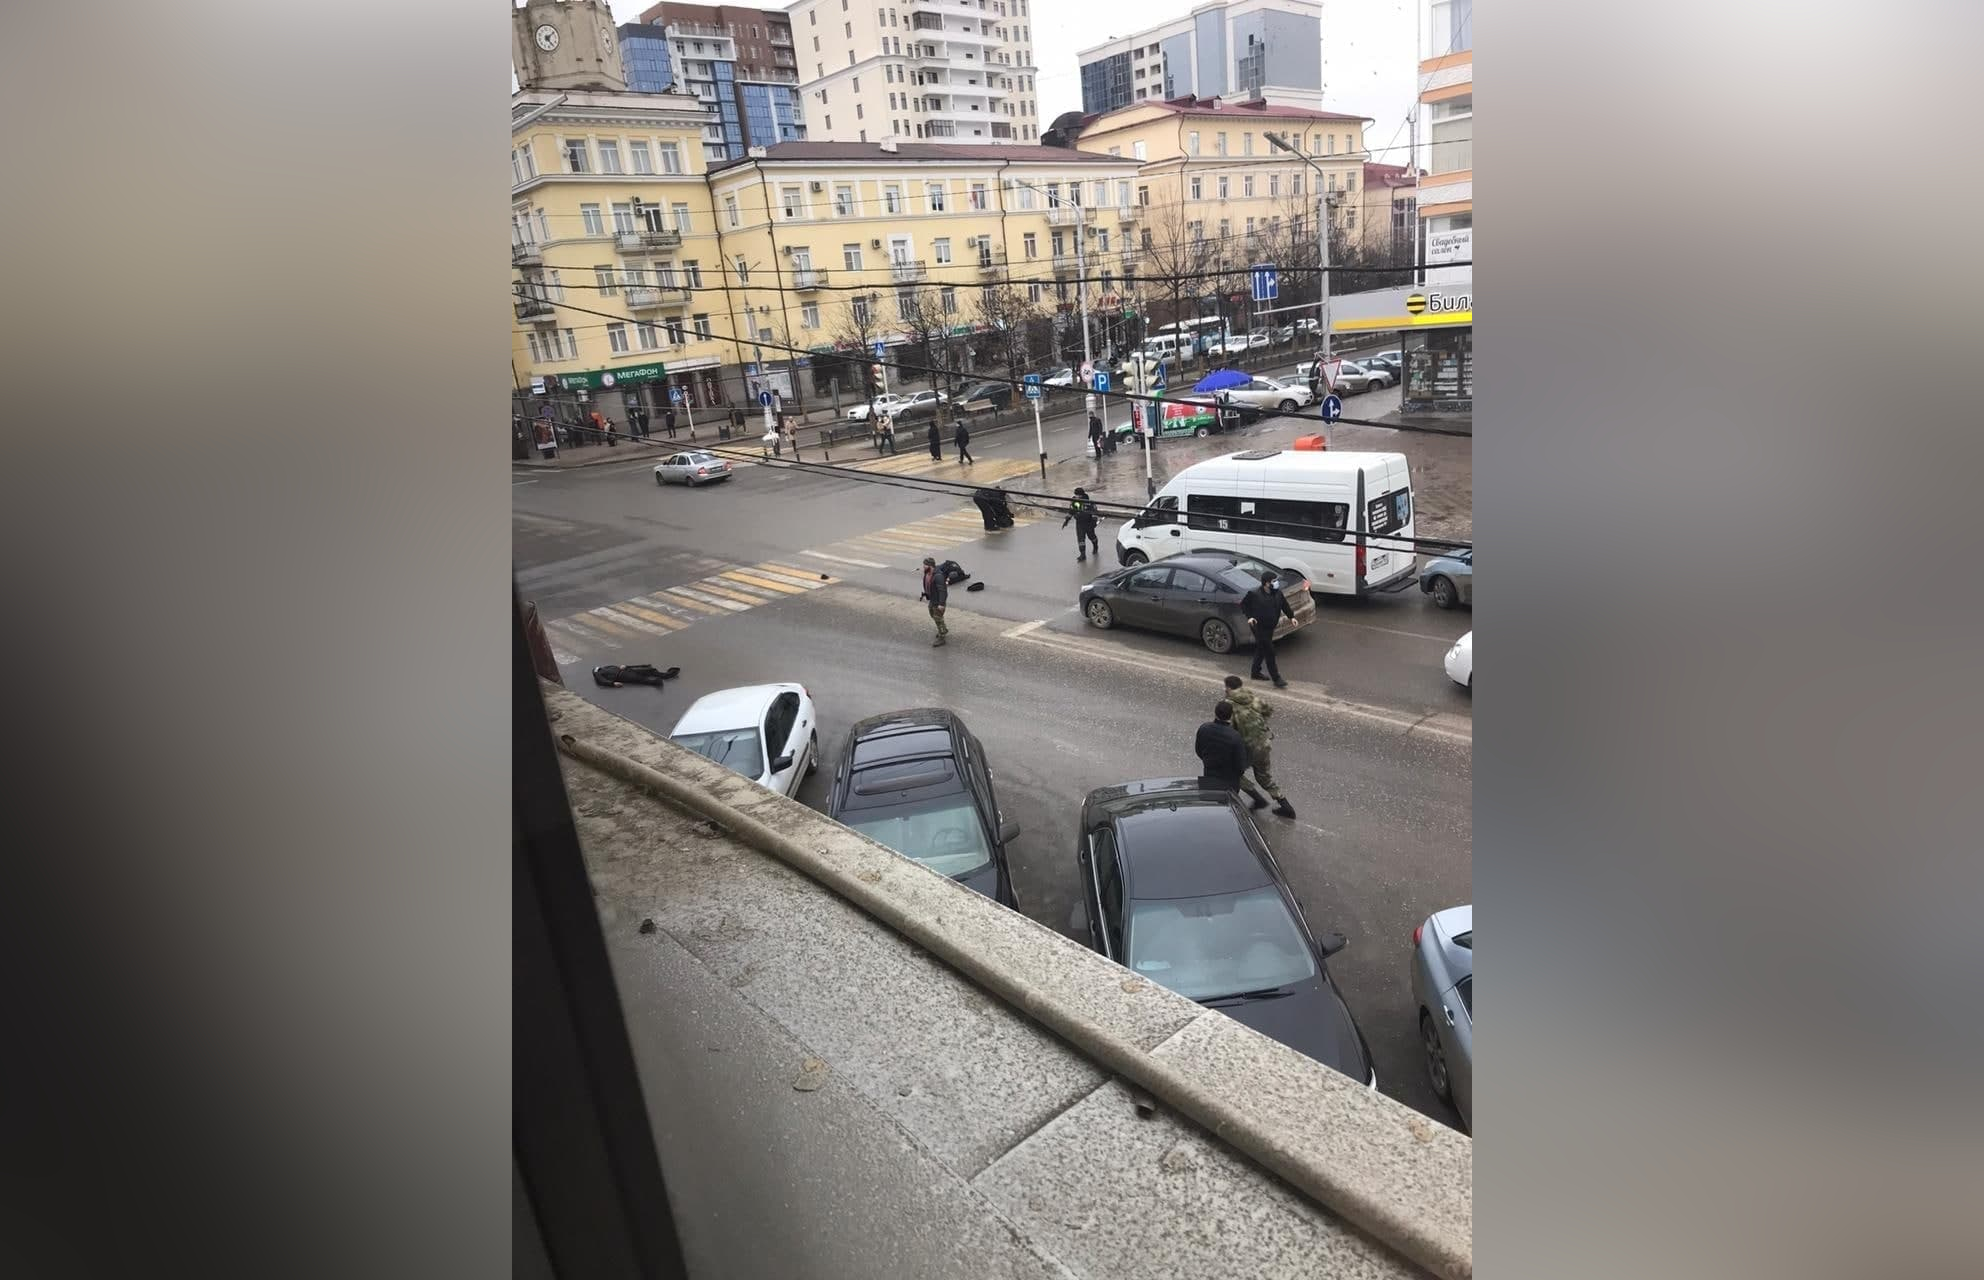 Видео нападения на крокус снятое террористами. Стрельба в центре Грозного. Нападение на полицейских в Грозном. Пересрелкавгрозном сегодня.